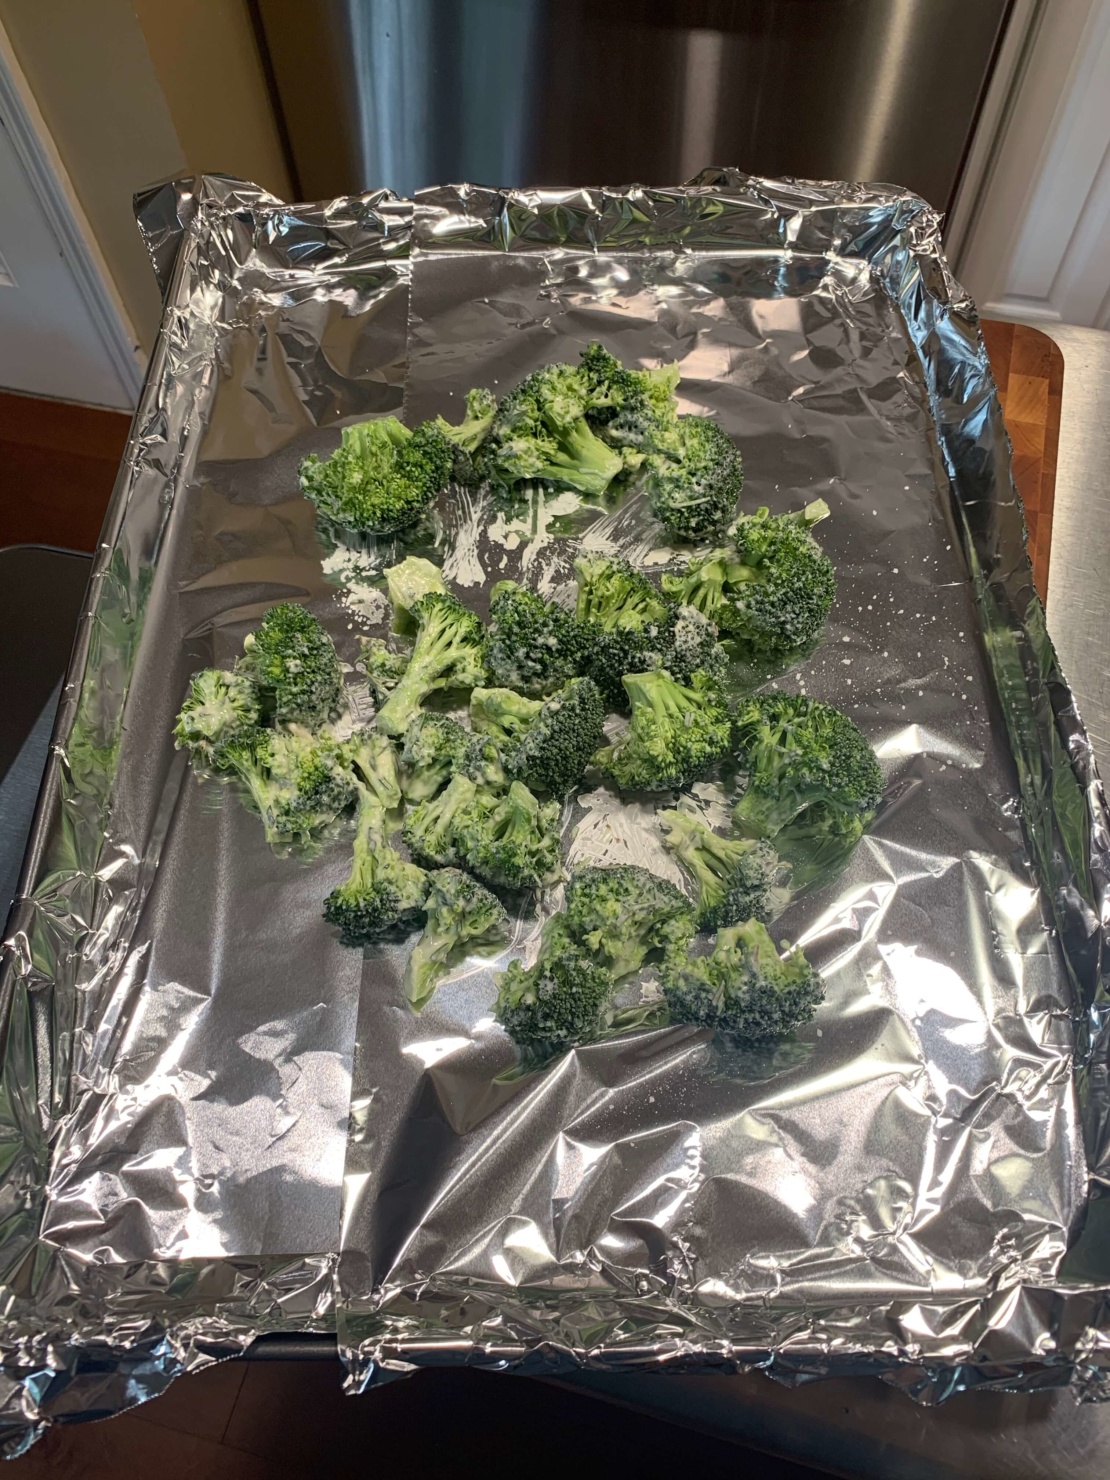 charred broccoli & rosemary aioli